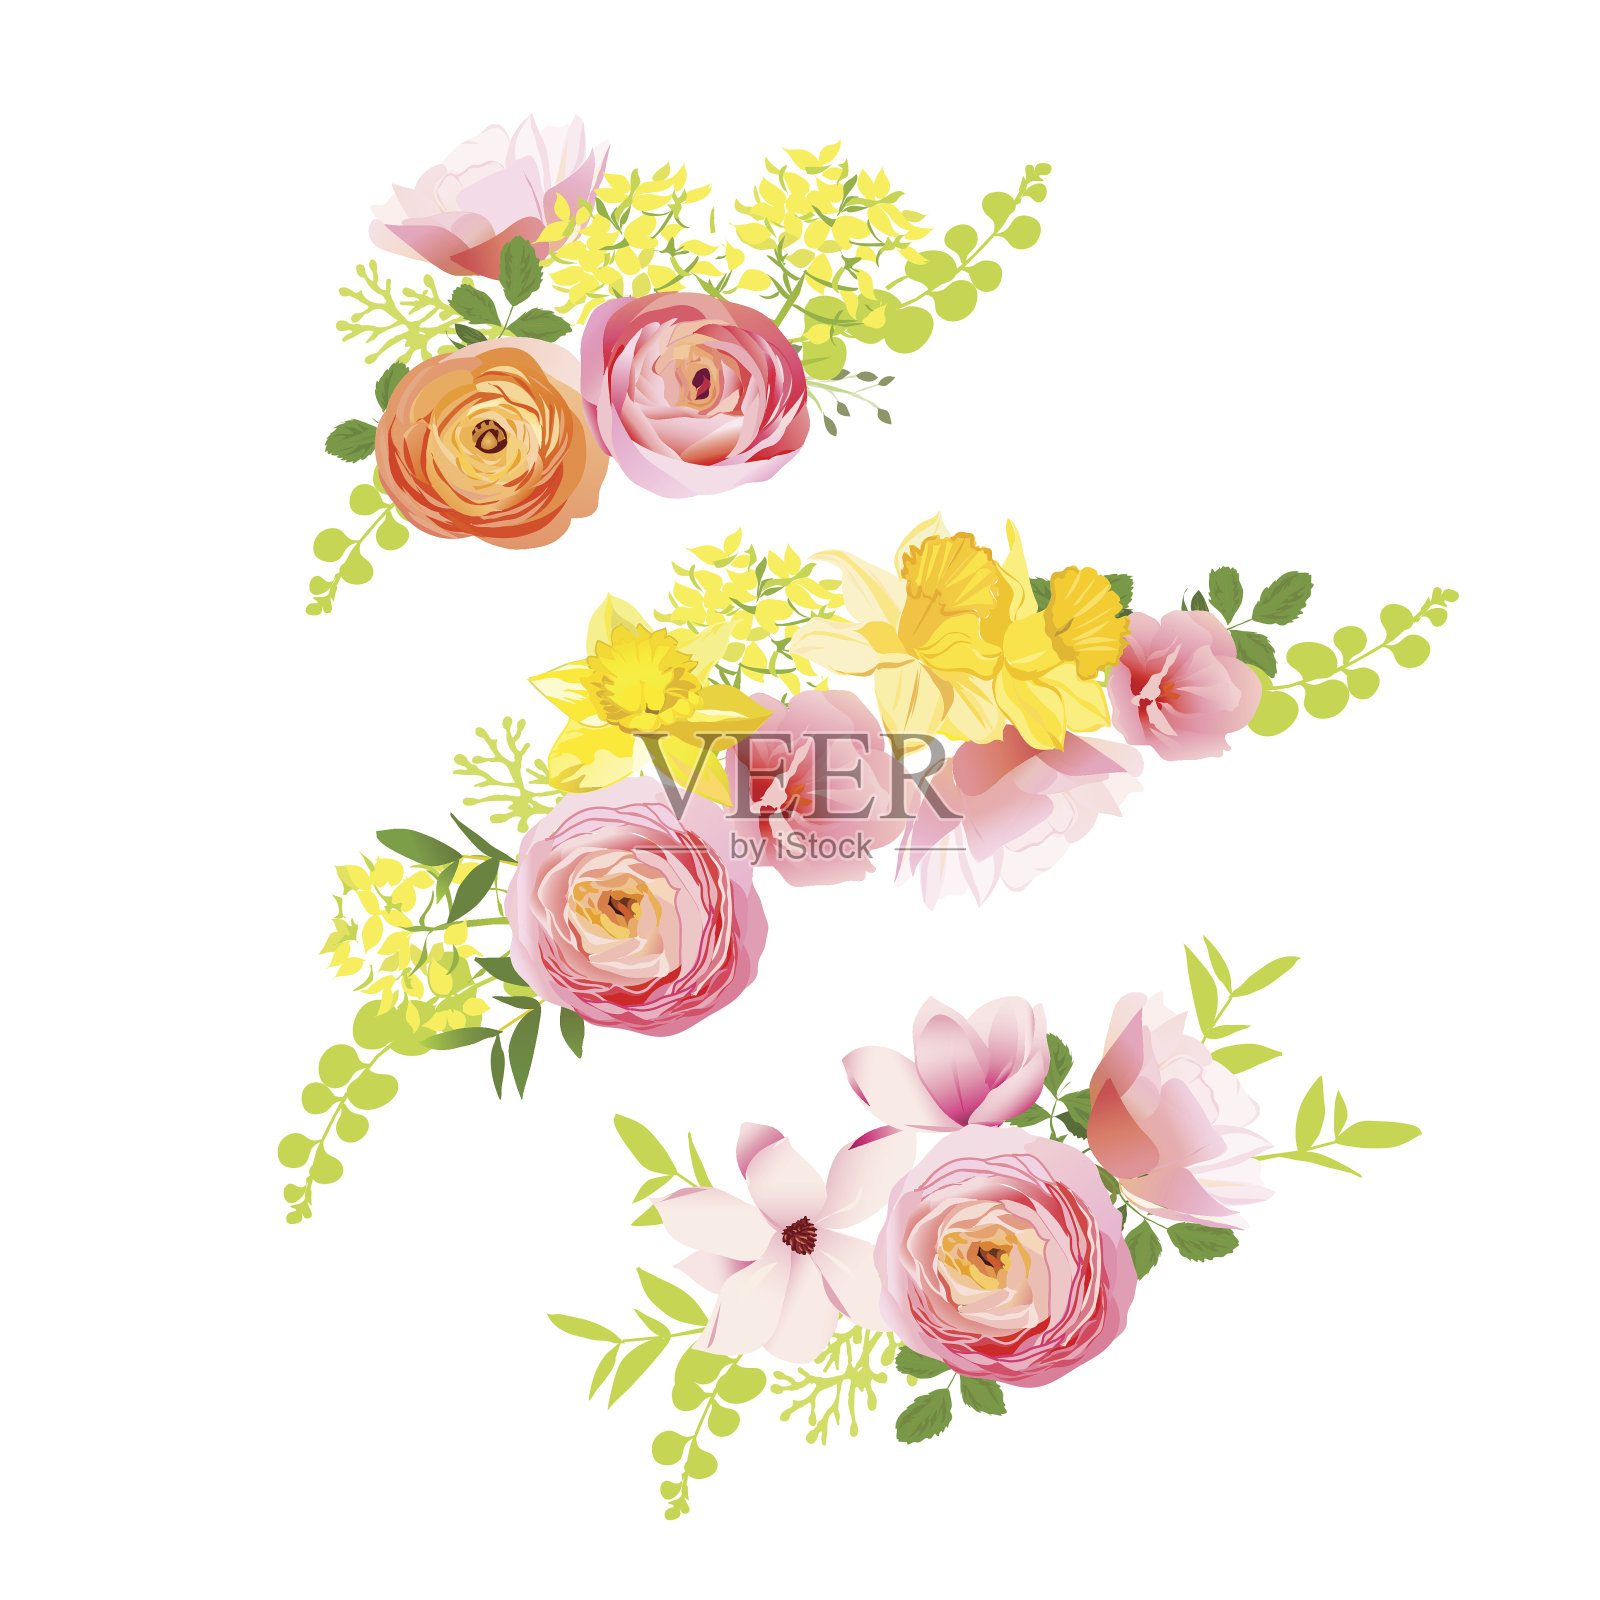 阳光明媚的春天，玫瑰，毛茛，水仙，牡丹花束。设计元素图片